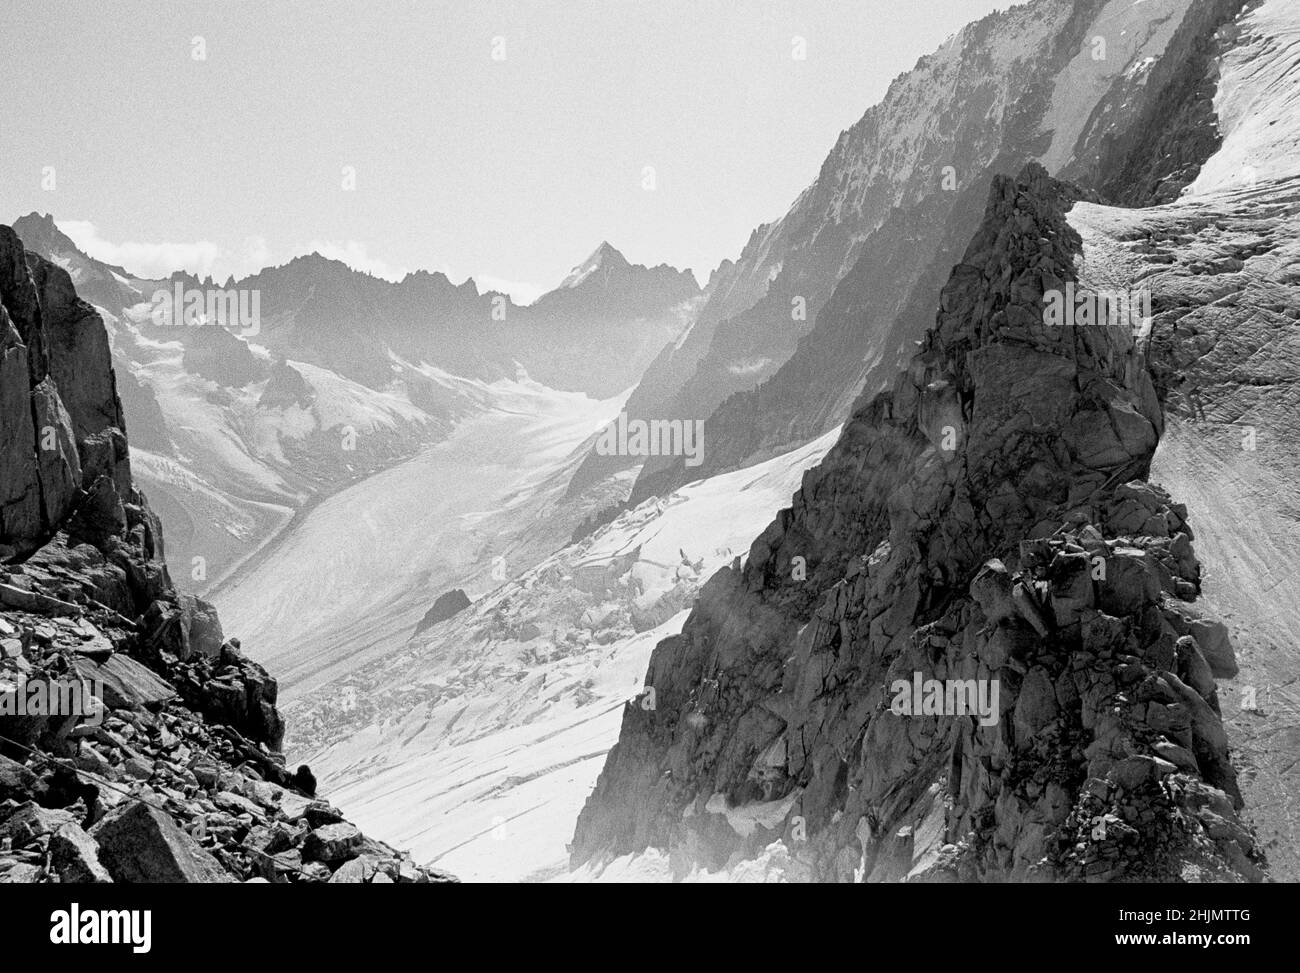 Fotografia in bianco e nero di rocce frastagliate, cime montuose e valle glaciale, Les Grands Montets, Chamonix, Alpi francesi, Francia, Europa, 2009. Foto Stock